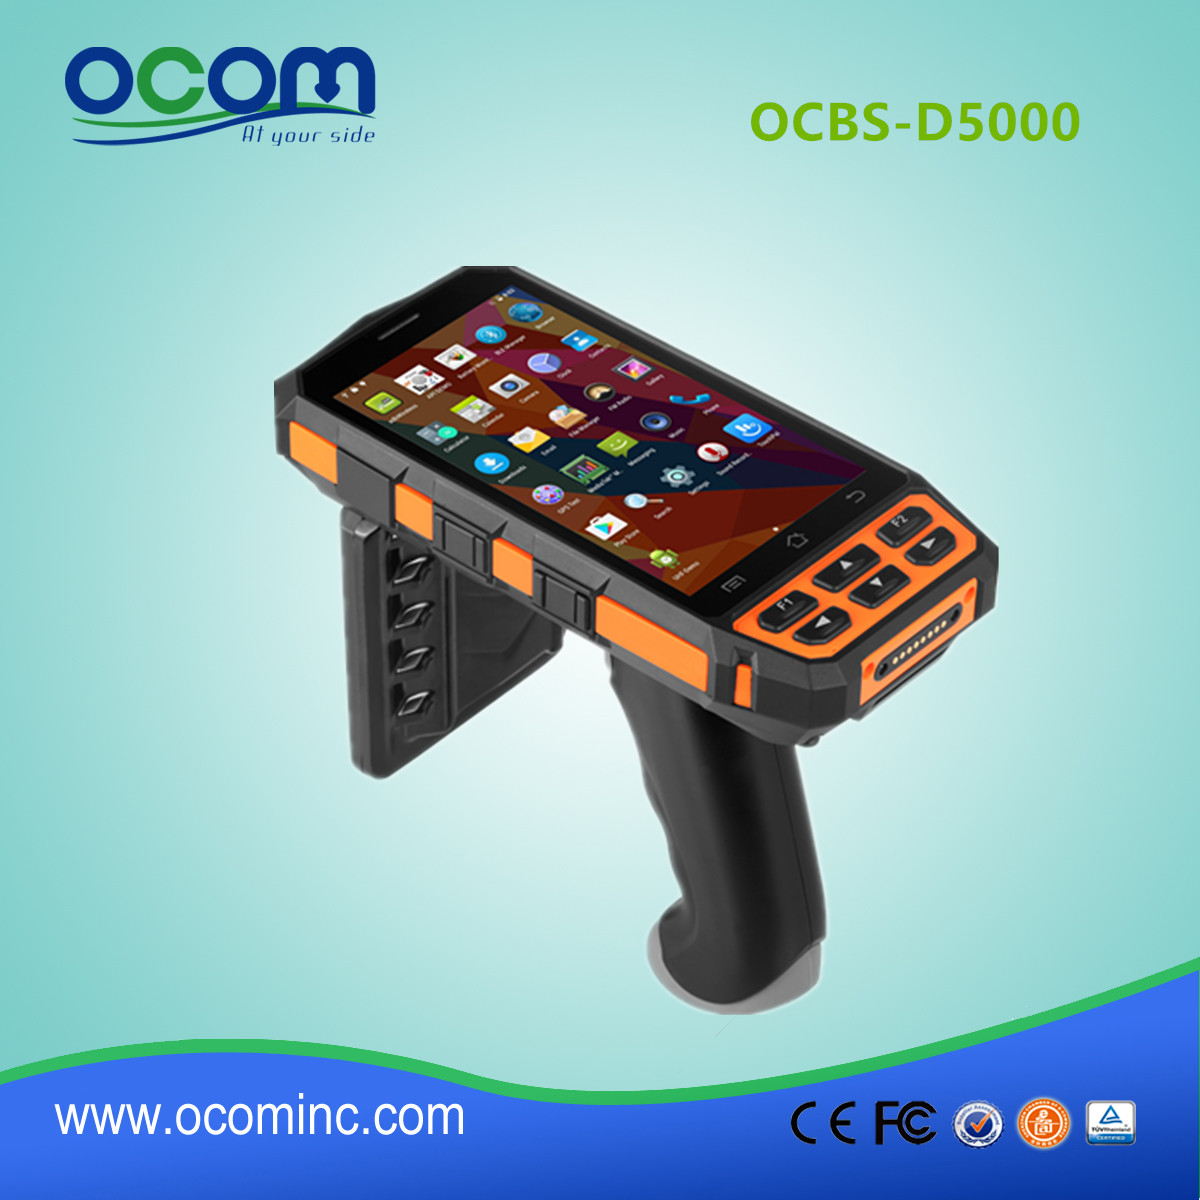 OCBS-D5000 restaurante portátil robusto android OS industrial pda RFID reader